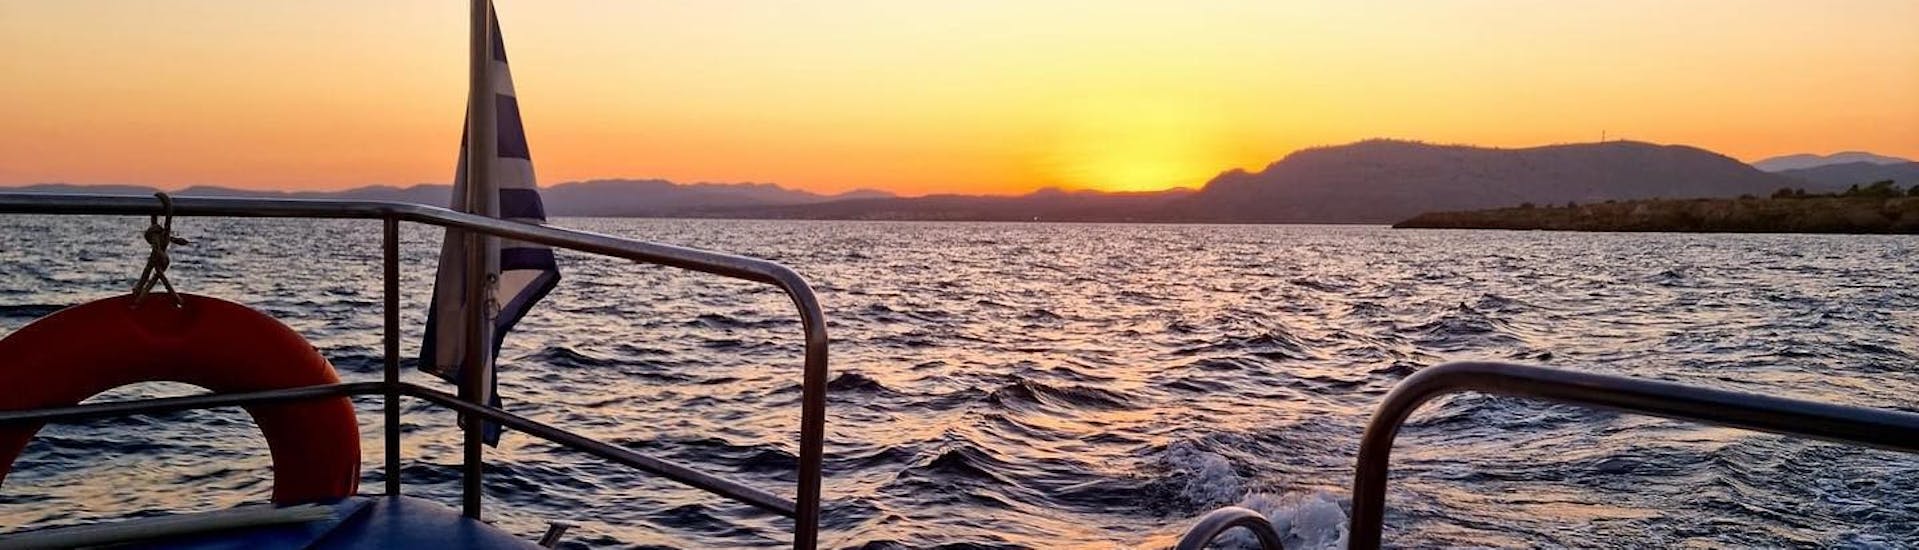 Il sole tramonta durante il giro in barca con fondo di vetro al tramonto nella baia di Navarone e a Pefkos.